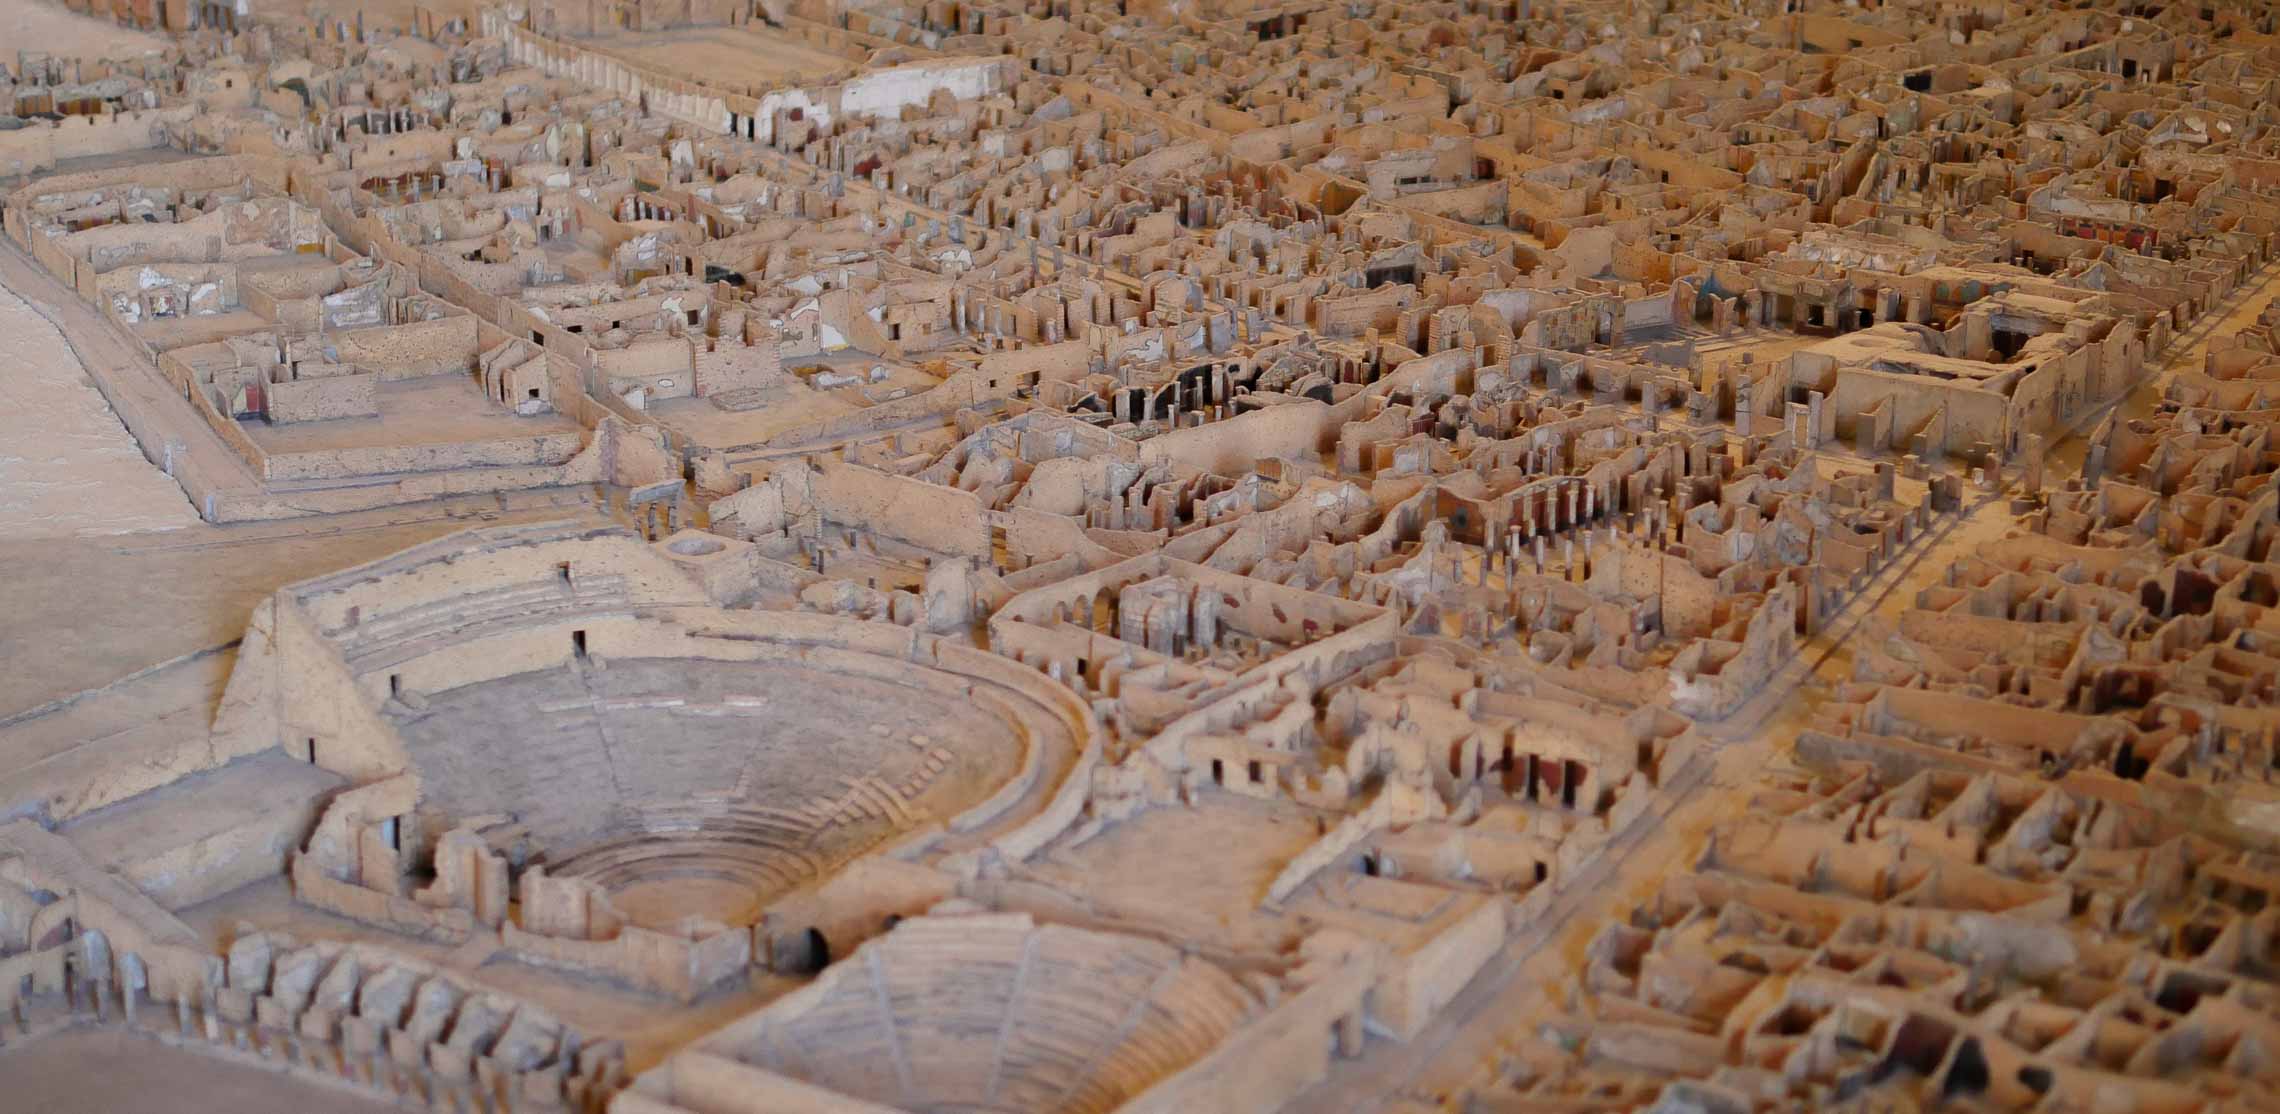 Modell der Ausgrabungen von Pompeji aus Kork.